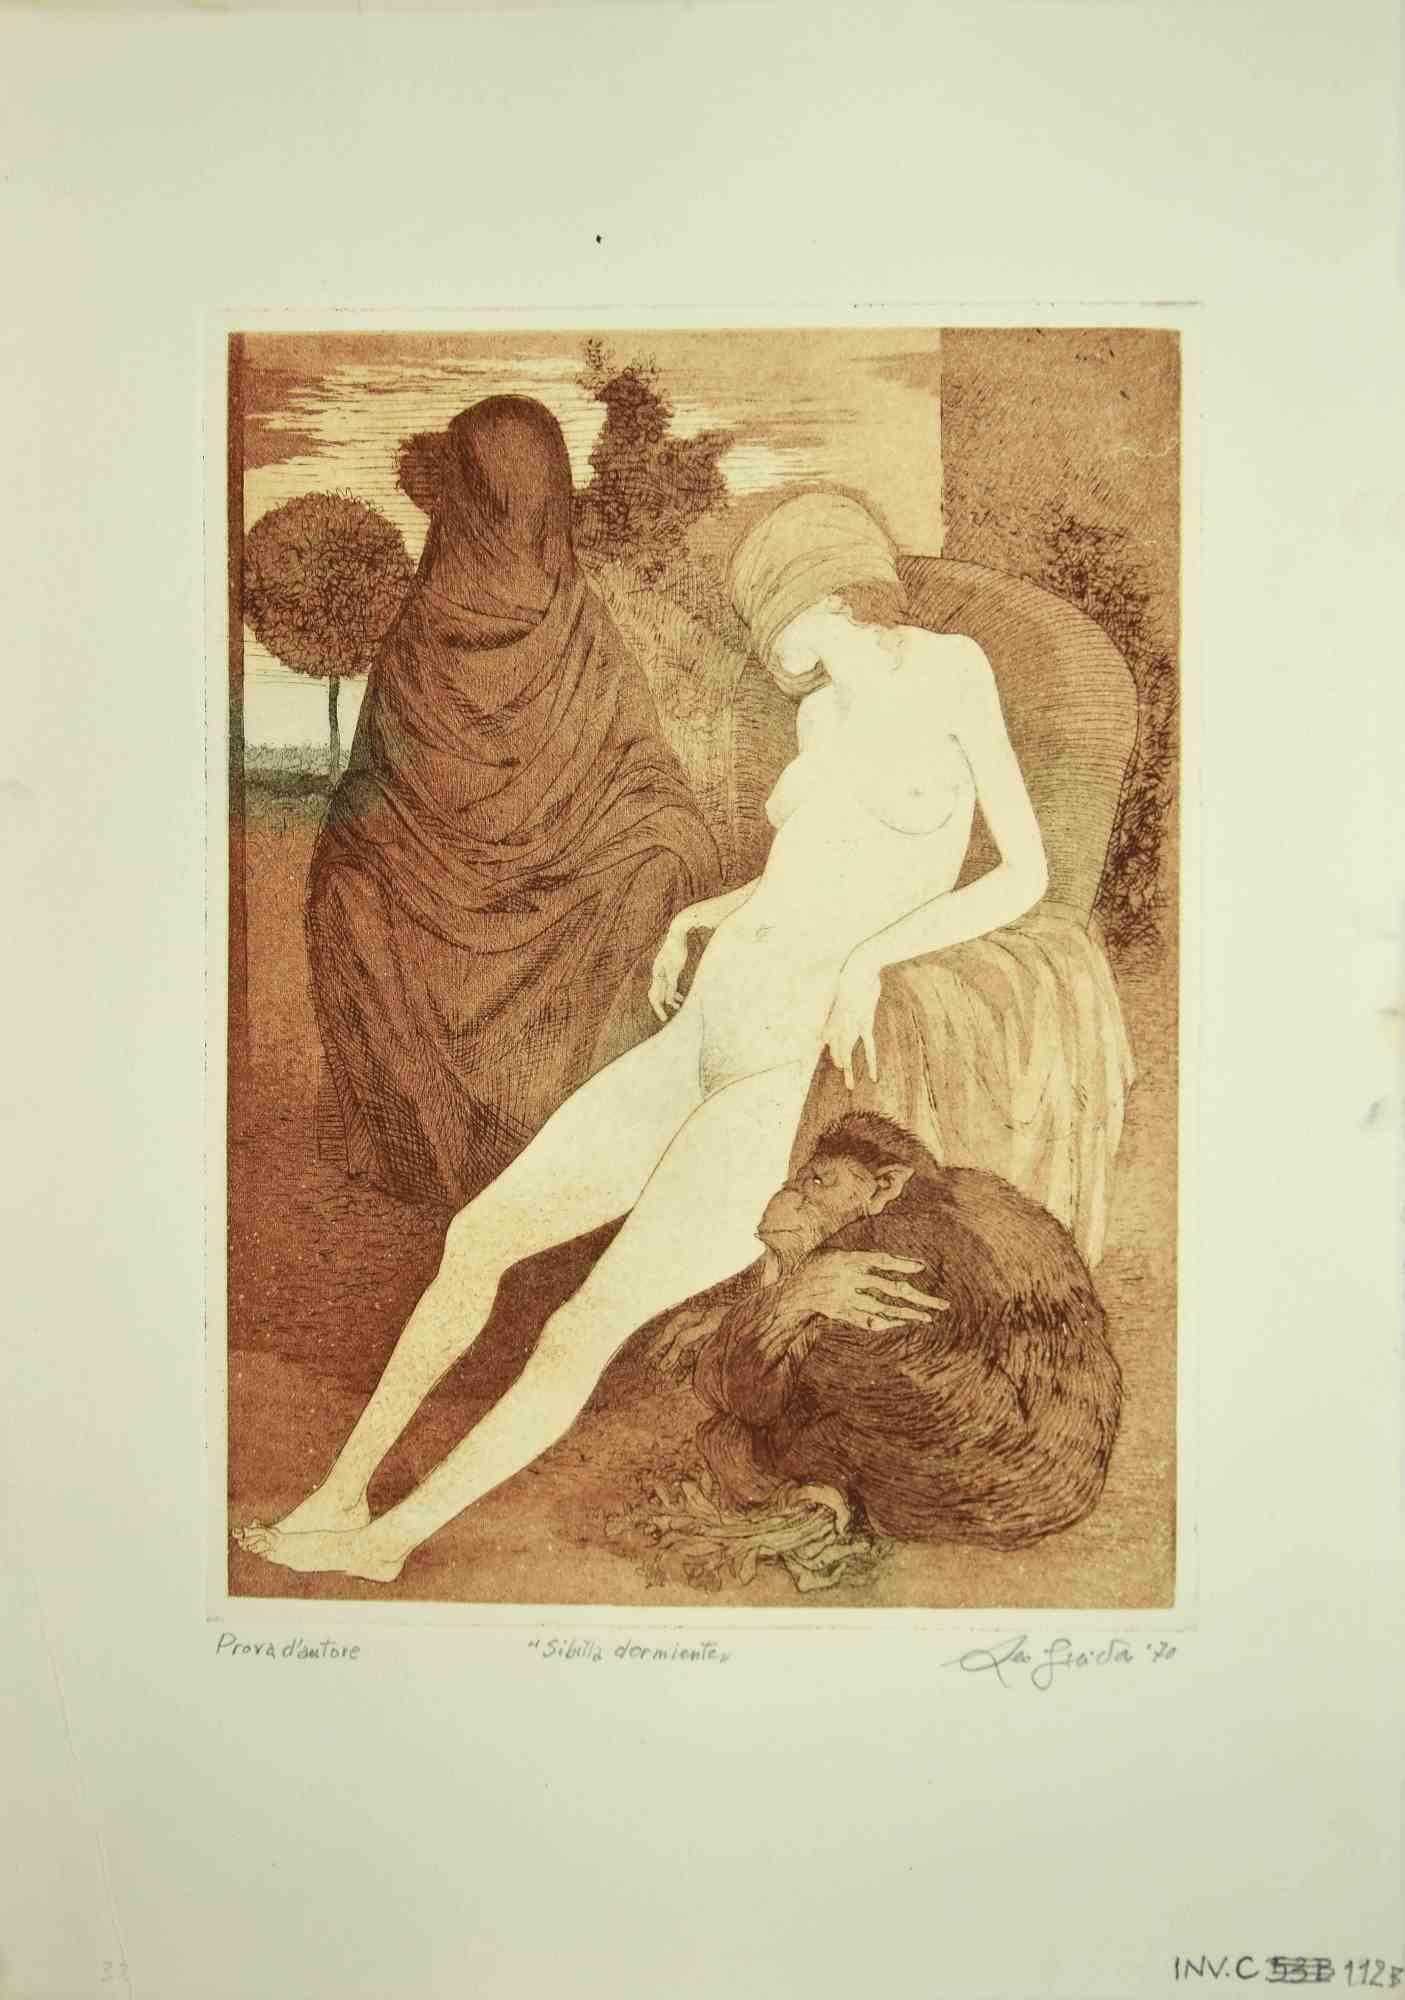 Sleeping Sybil est une œuvre d'art originale réalisée en 1970 par l'artiste contemporain italien  Leo Guida  (1992 - 2017).

Gravure originale sur papier couleur ivoire.

Signé à la main en bas à droite au crayon.

Épreuve d'artiste, titrée en bas